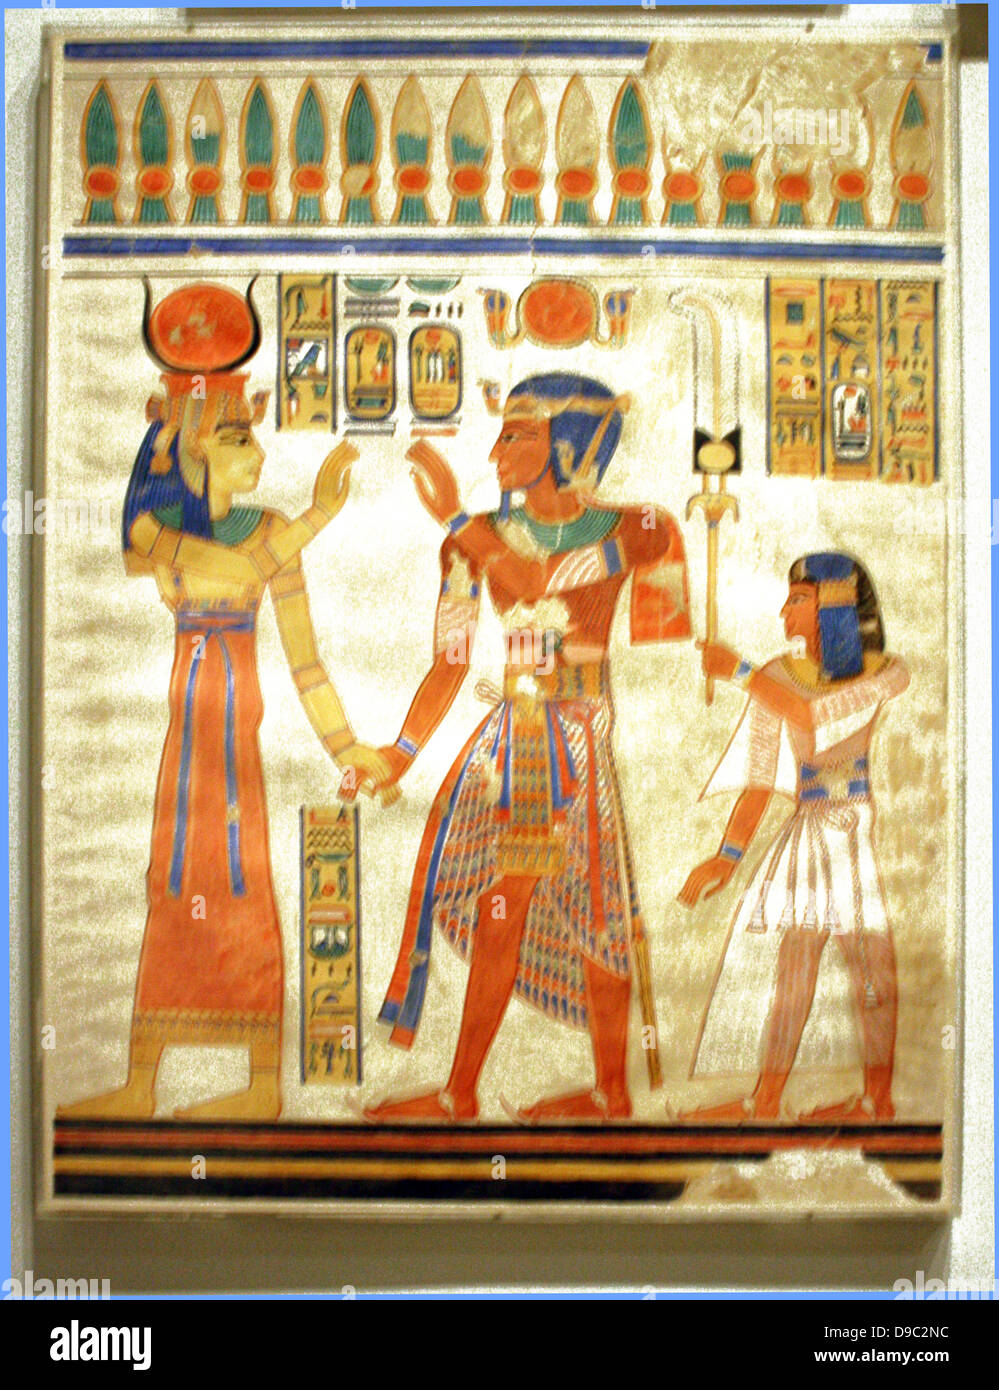 Pinturas de pared egipcias desde el nuevo reino, facsimies de decoración  mural del antiguo Egipto. Son precisas copias de originales escenas, exacto  en línea y color y, con pocas excepciones, en una